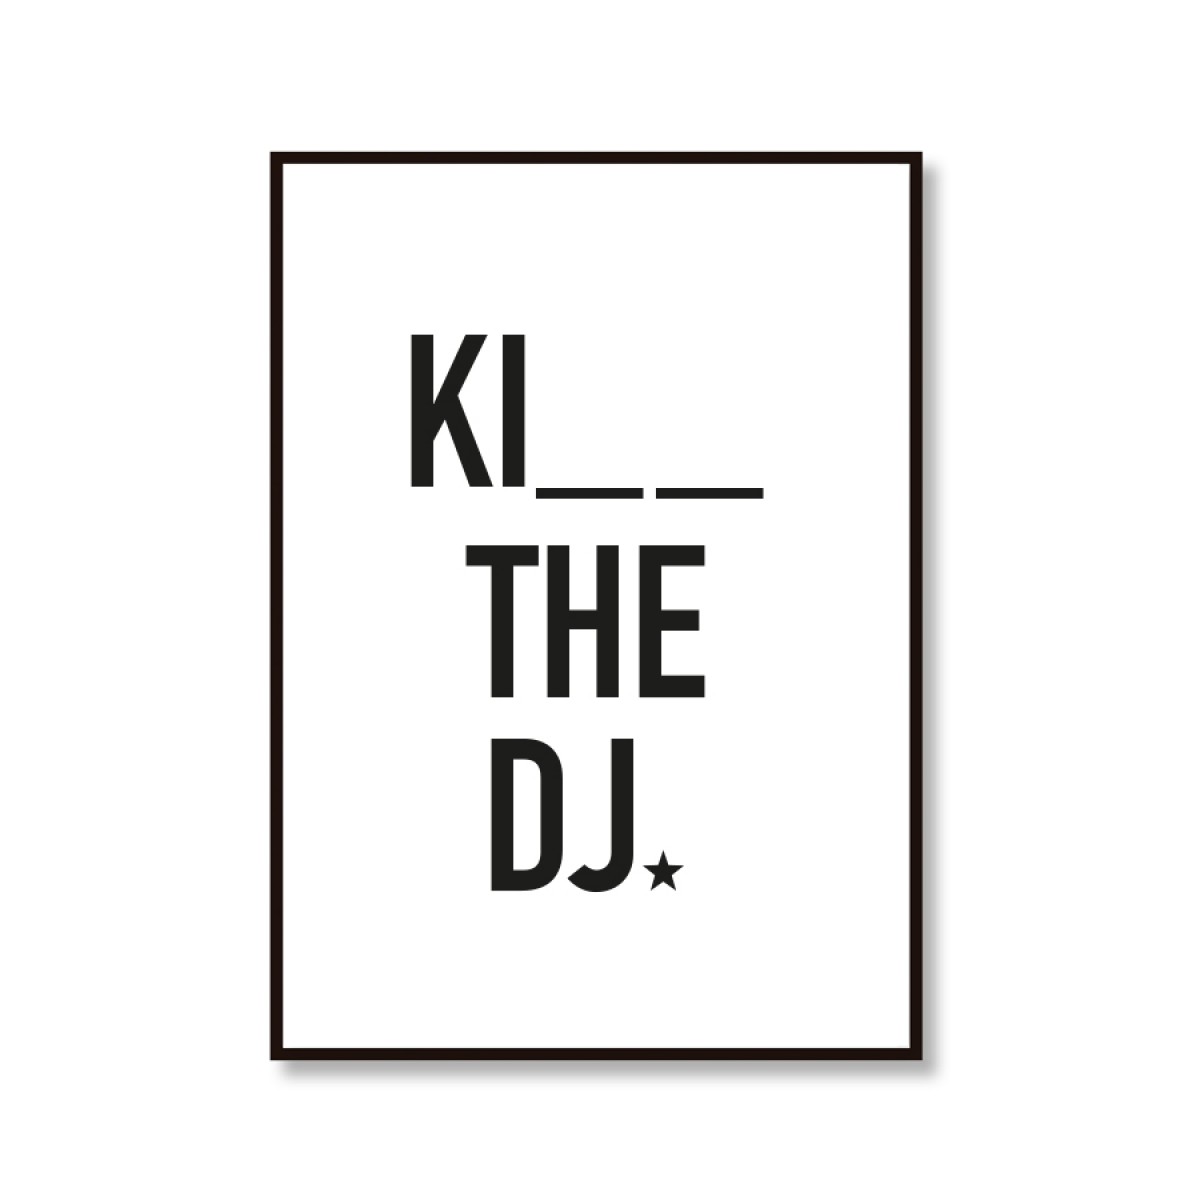 Amy & Kurt Berlin A3 Artprint "Kiss the DJ"